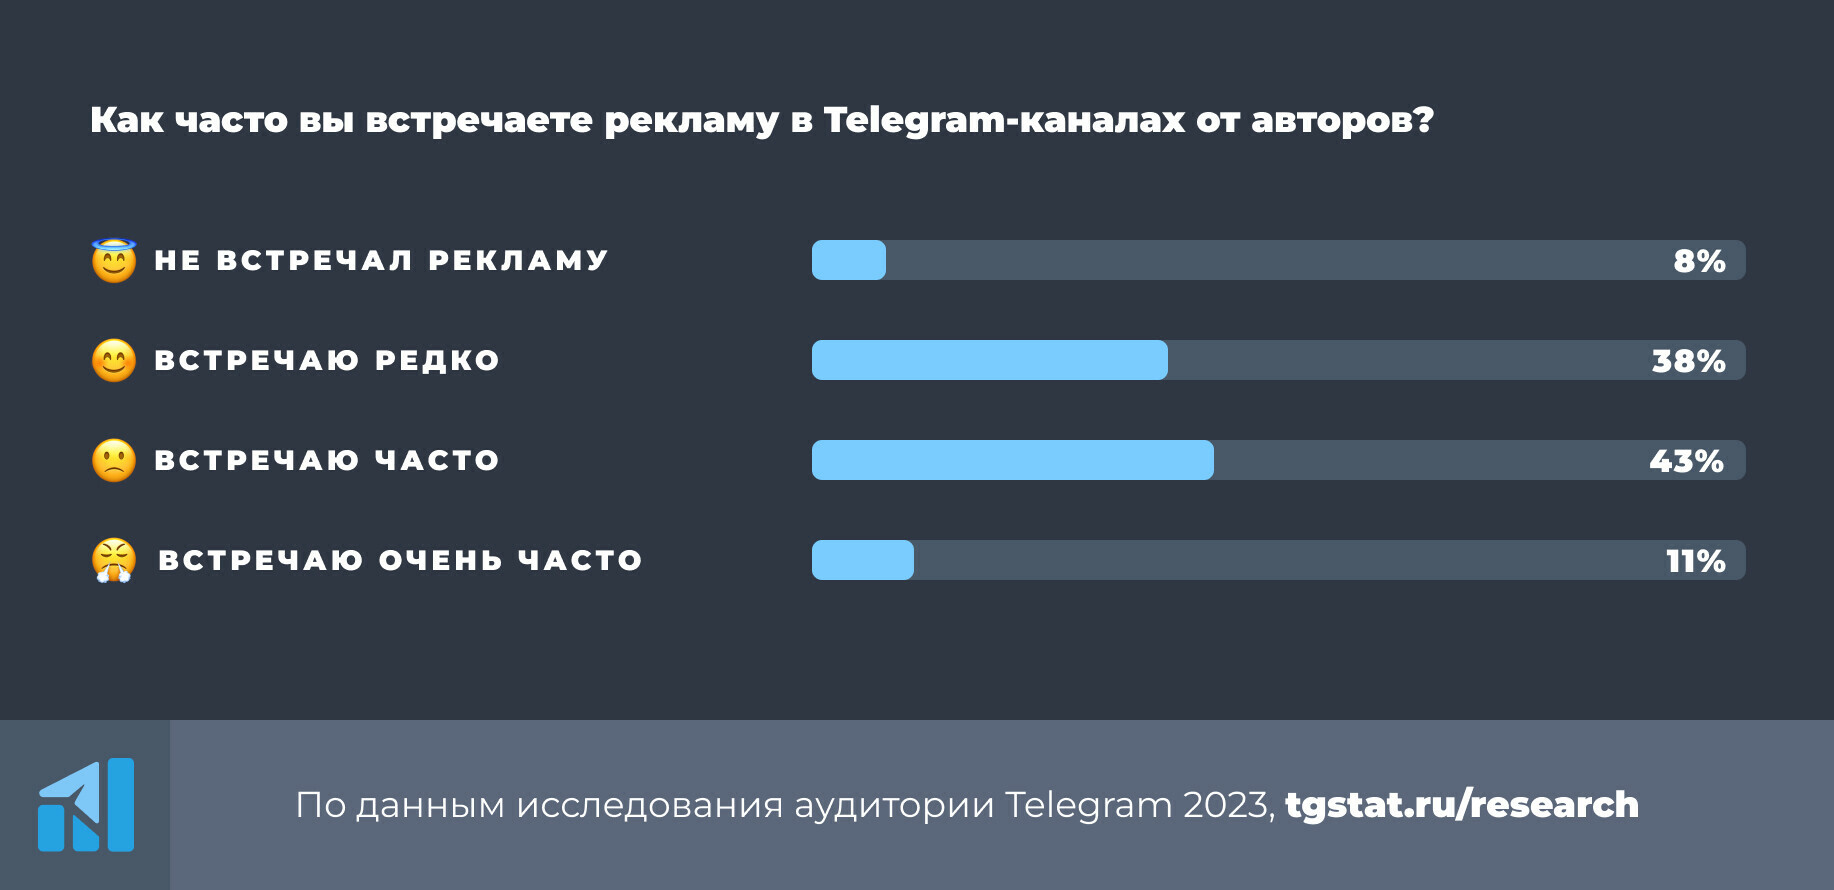 Треть пользователей редко видят официальную рекламу в Telegram, почти половина не знают про TON - исследование | Анализ рынков